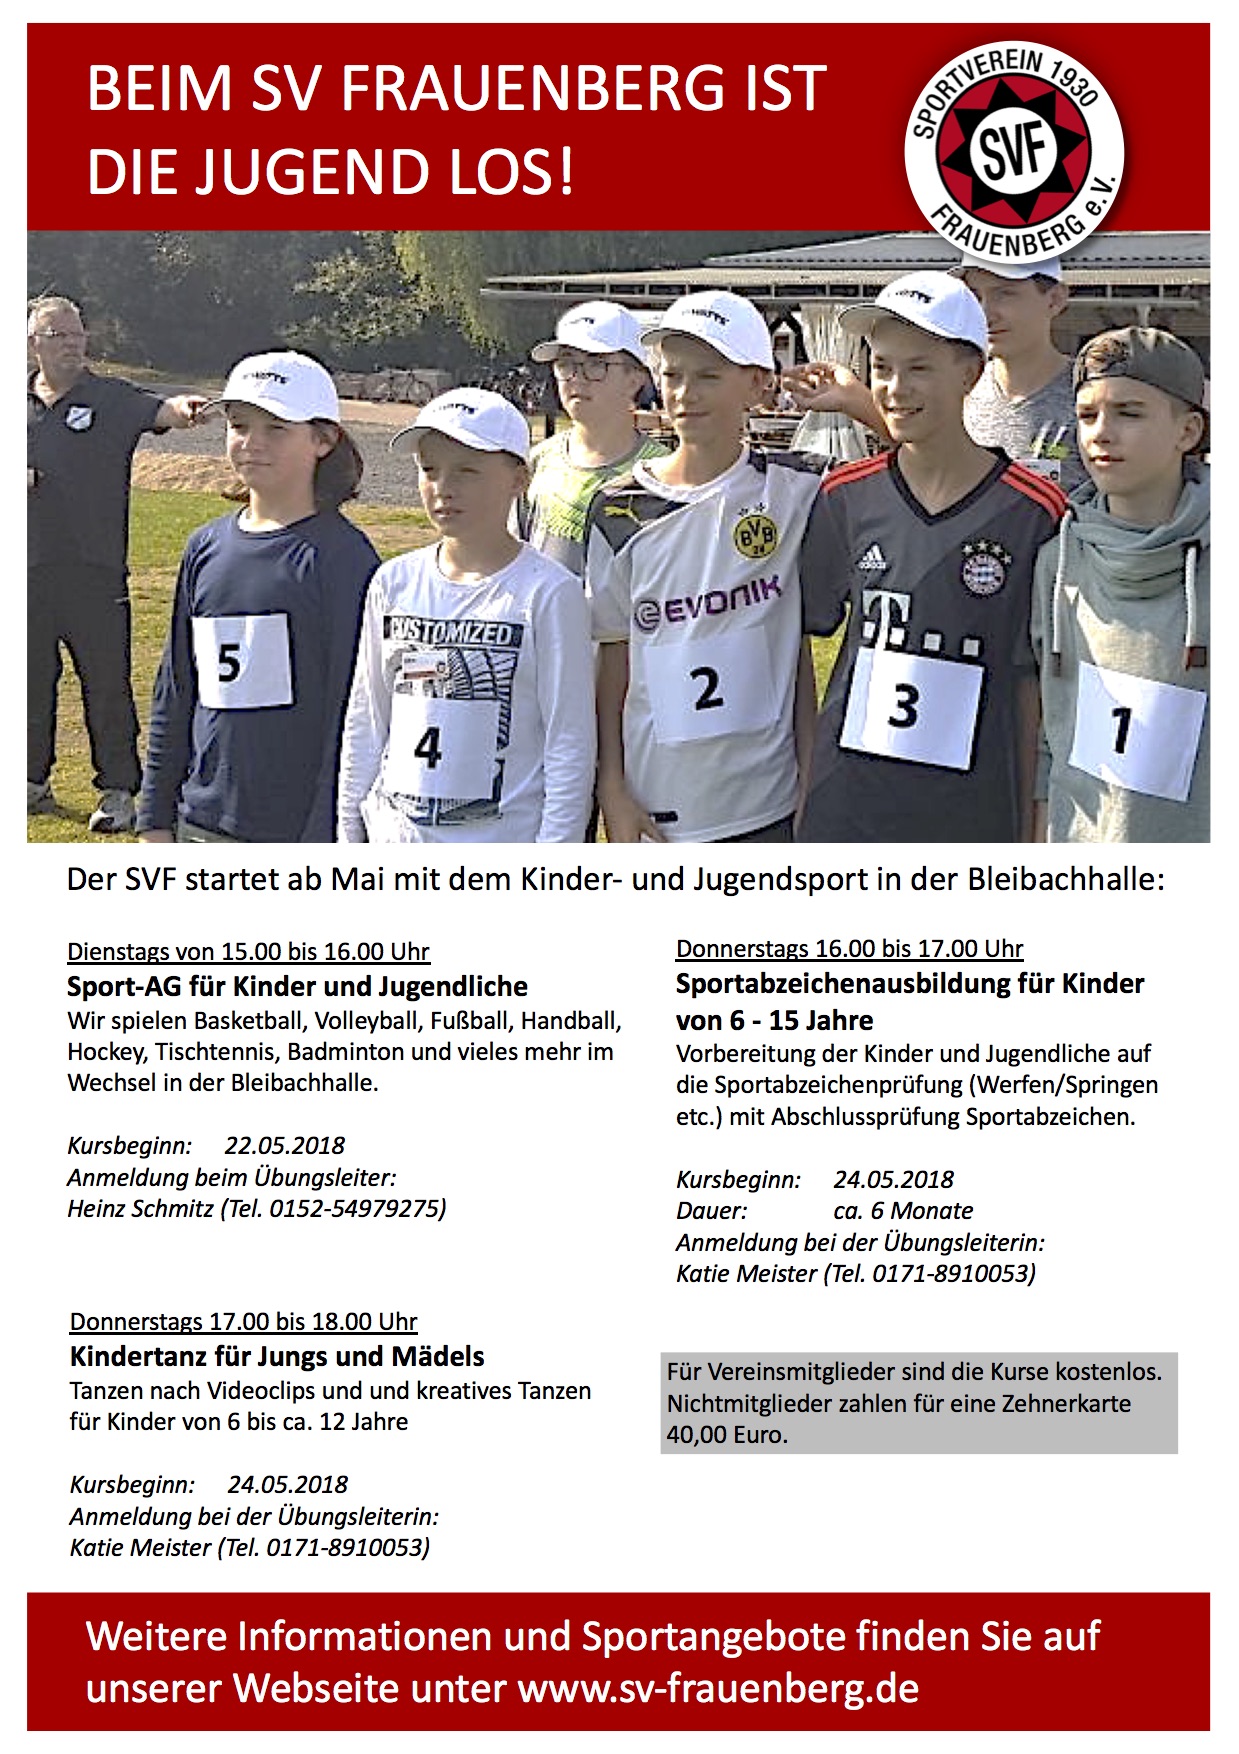 Sport-AG für Kinder und Jugendliche